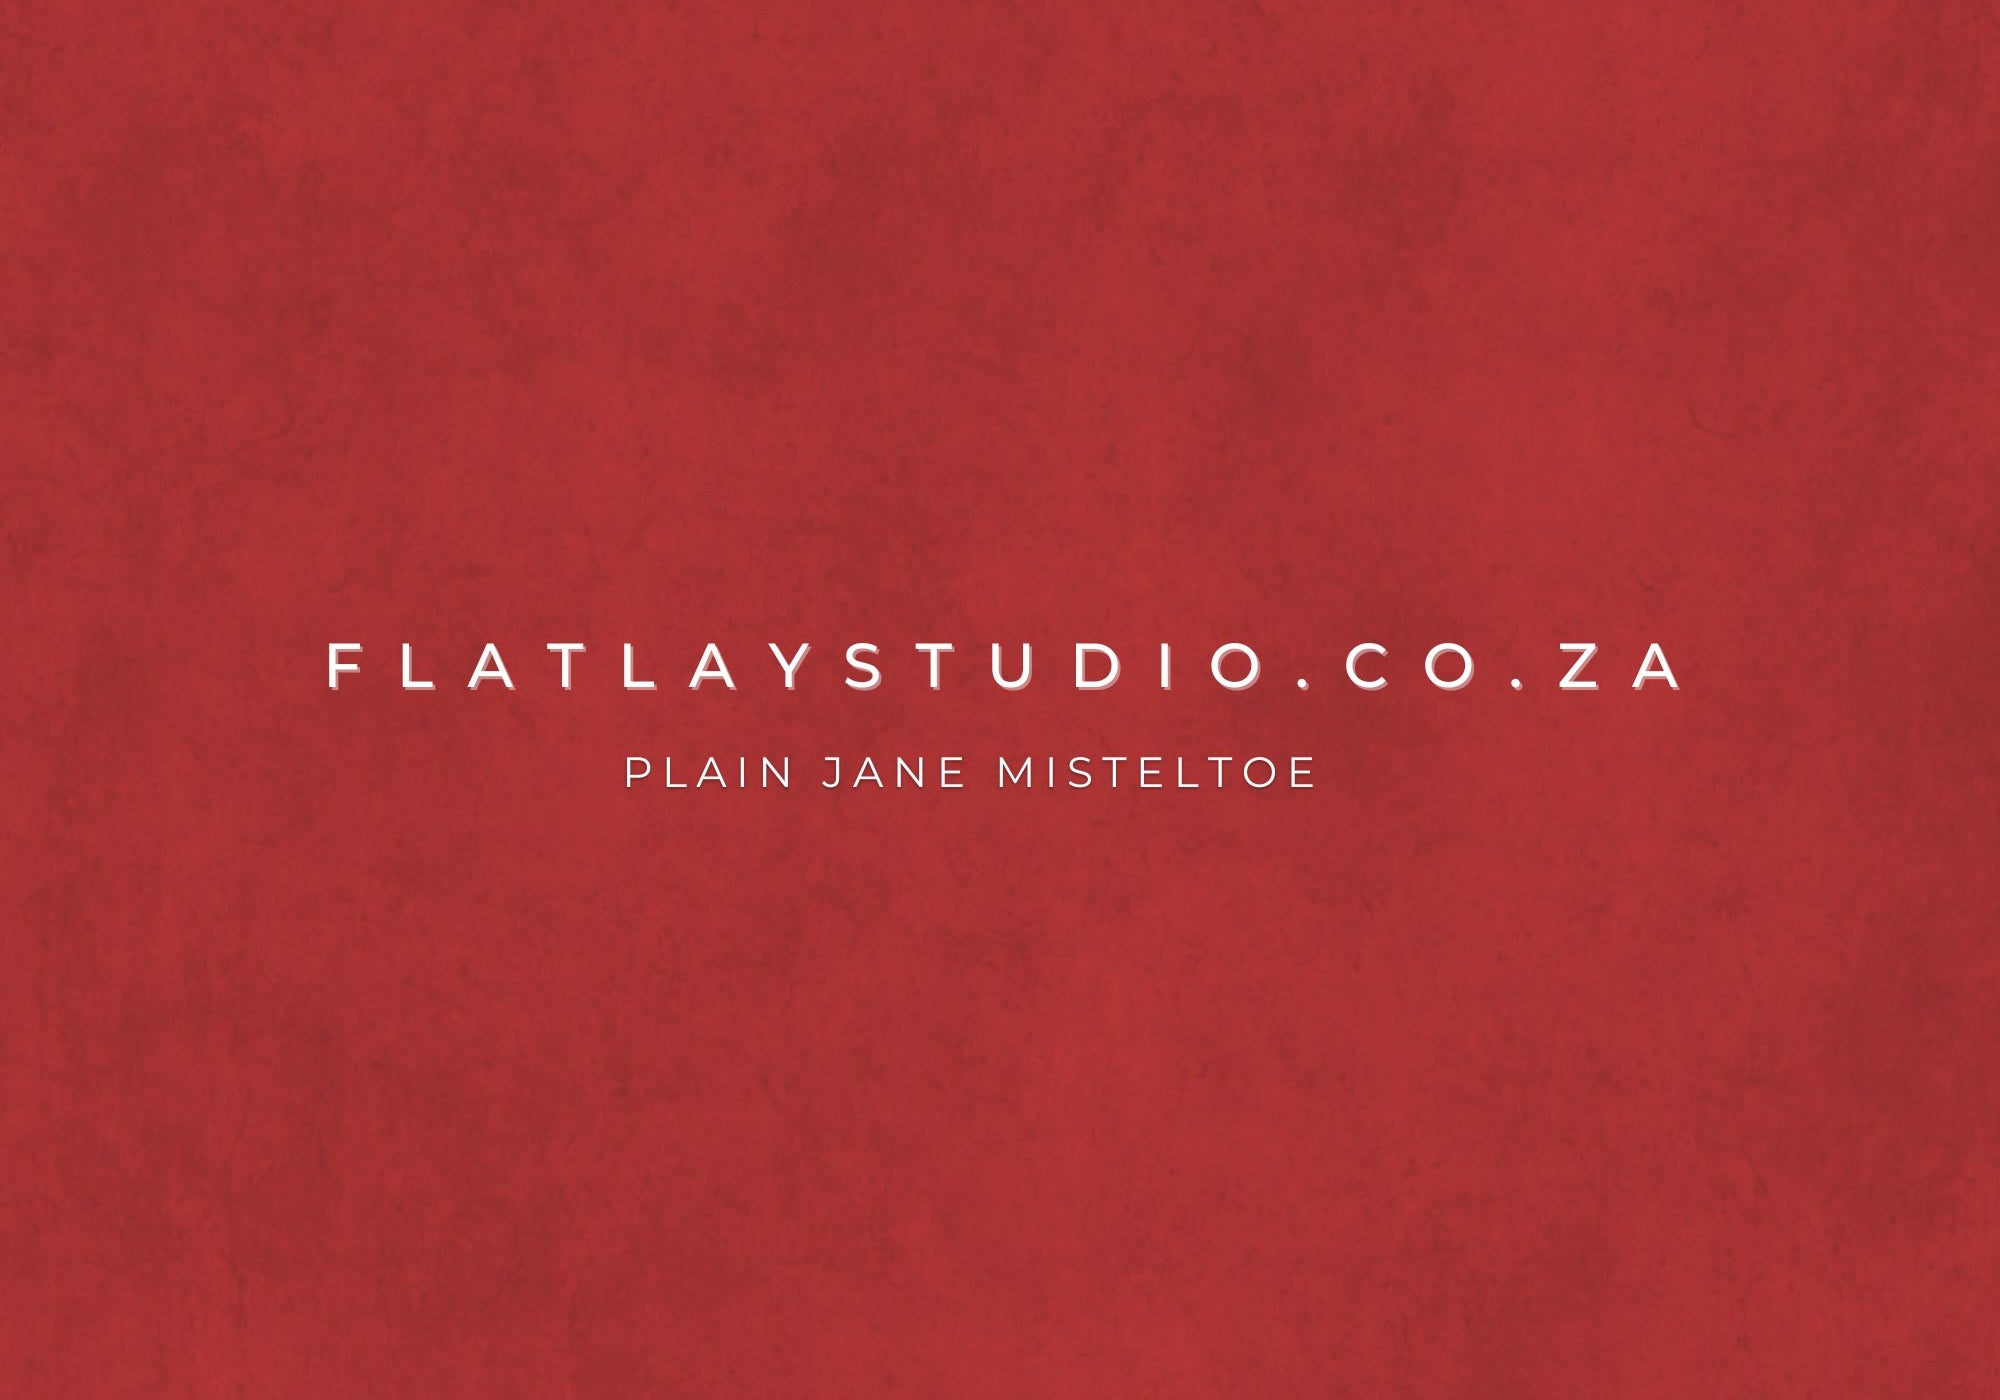 Plain Jane Mistletoe - FlatlayStudio Flatlay Styling Board